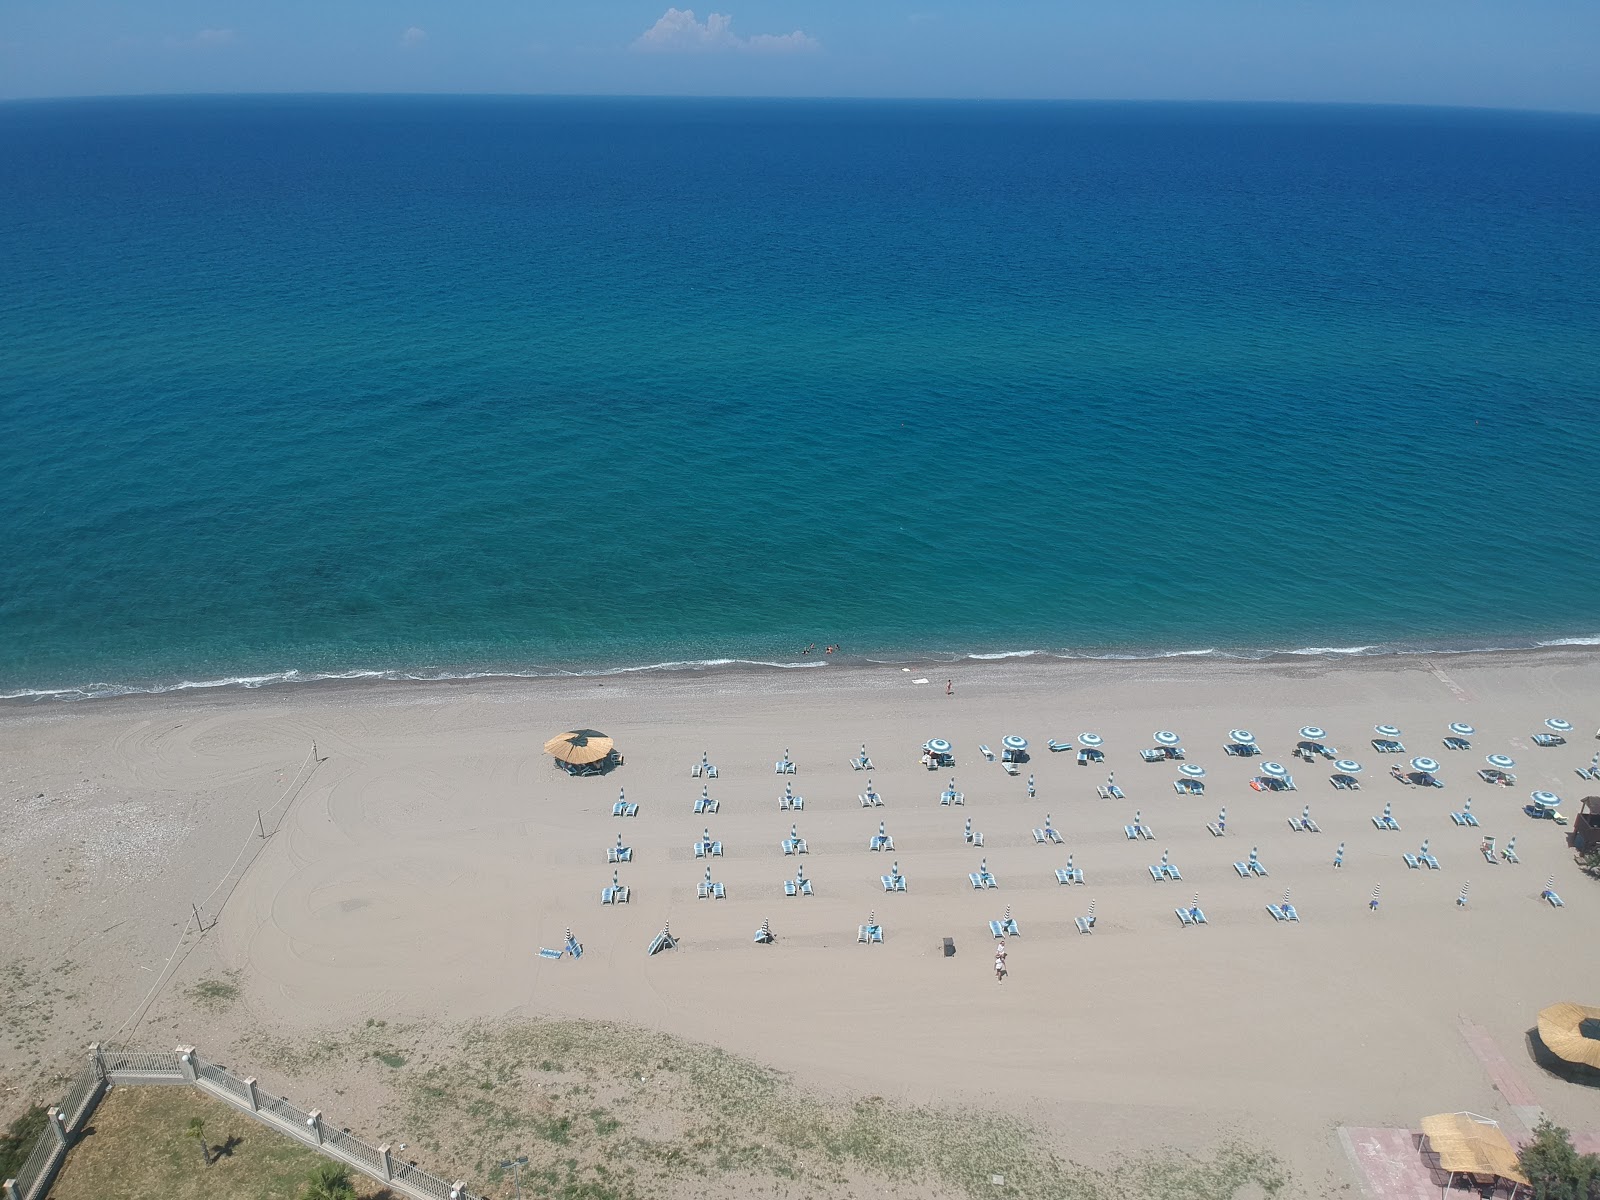 Mandatoriccio-Campana beach'in fotoğrafı mavi sular yüzey ile